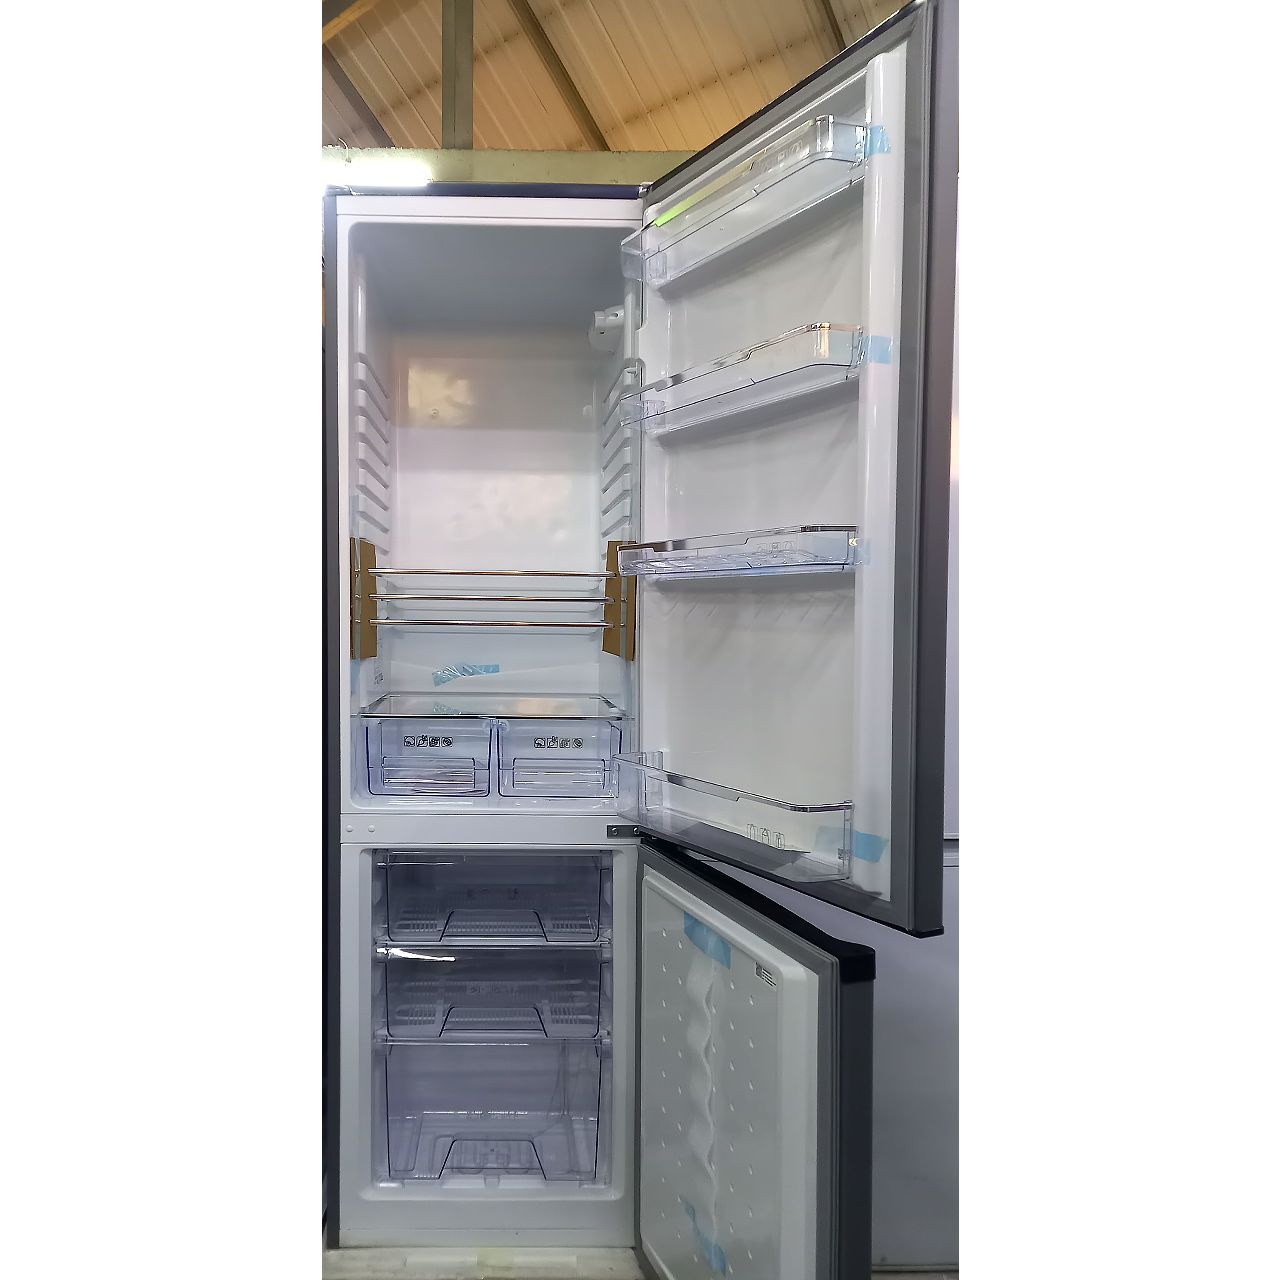 Холодильник двухкамерный Artel 265 литров